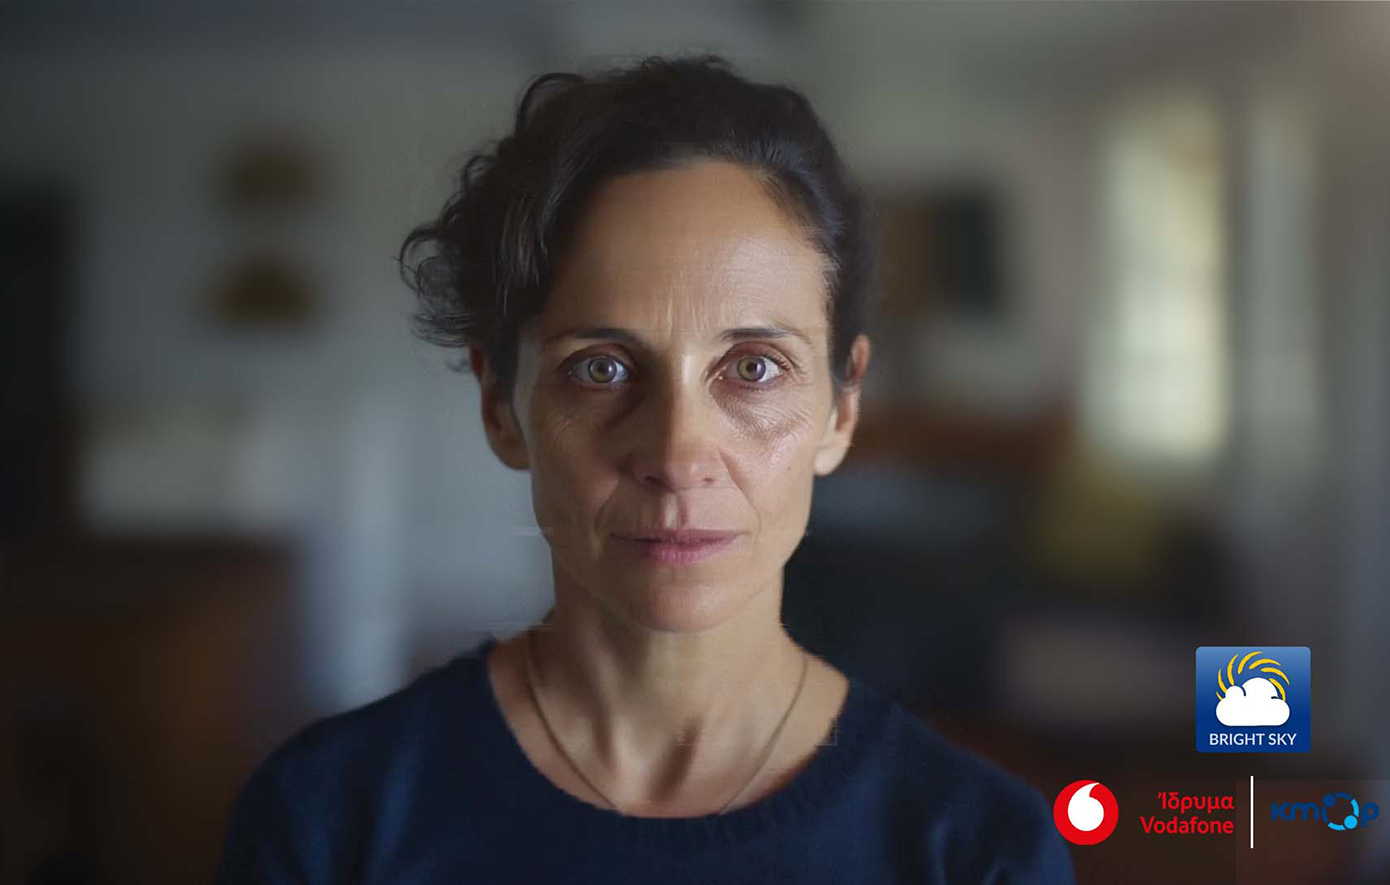 Το Ίδρυμα Vodafone συμβάλλει στην αντιμετώπιση της βίας κατά των γυναικών με σύμμαχο την τεχνολογία